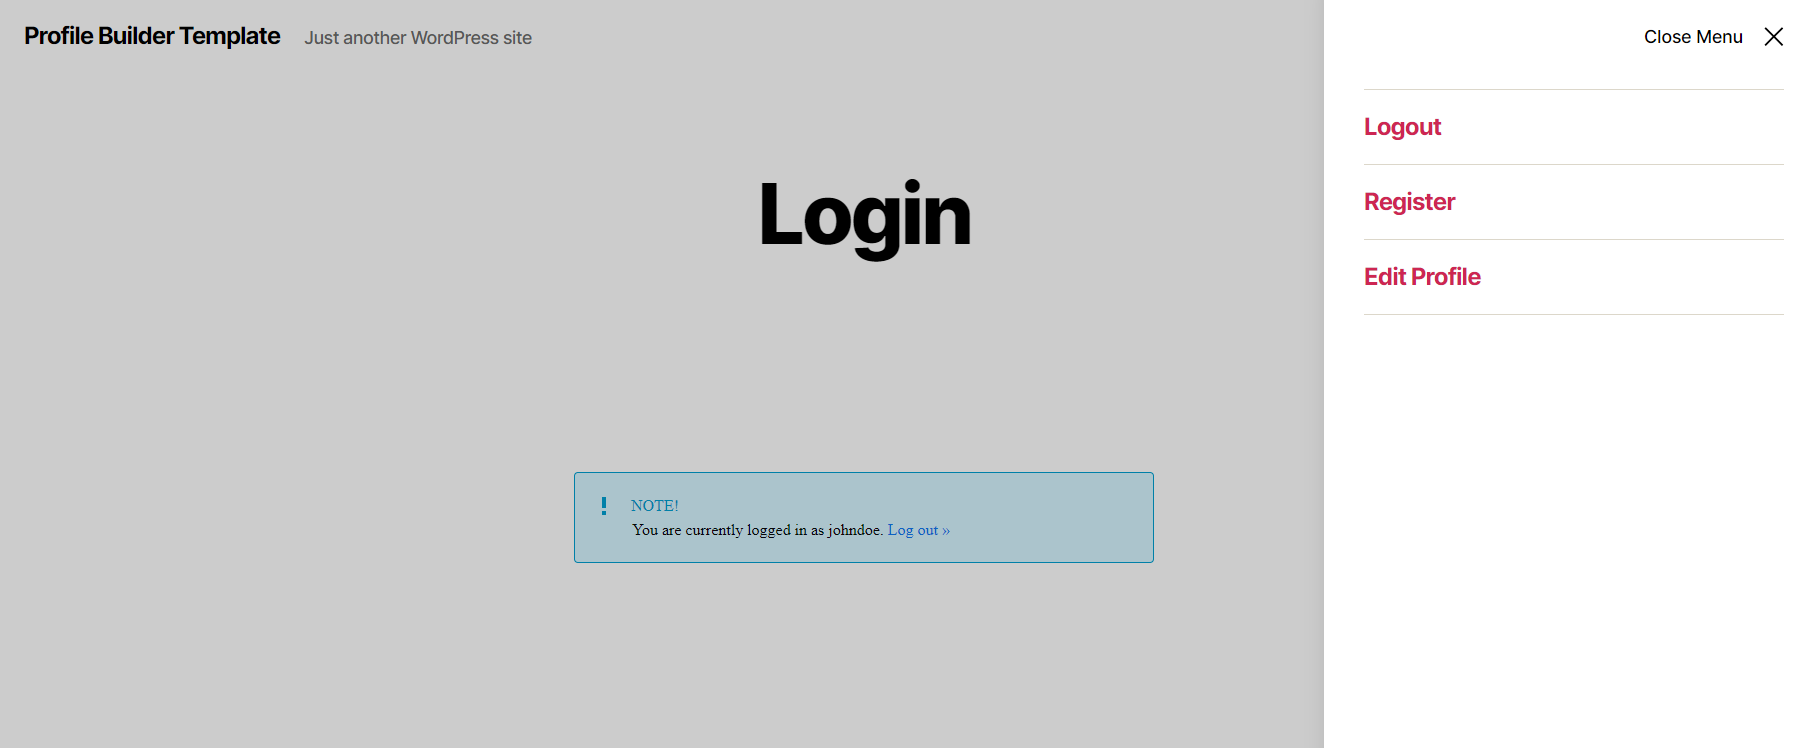 Profile Builder Pro - Custom Profile Menus - Login - Logout - Logged In User